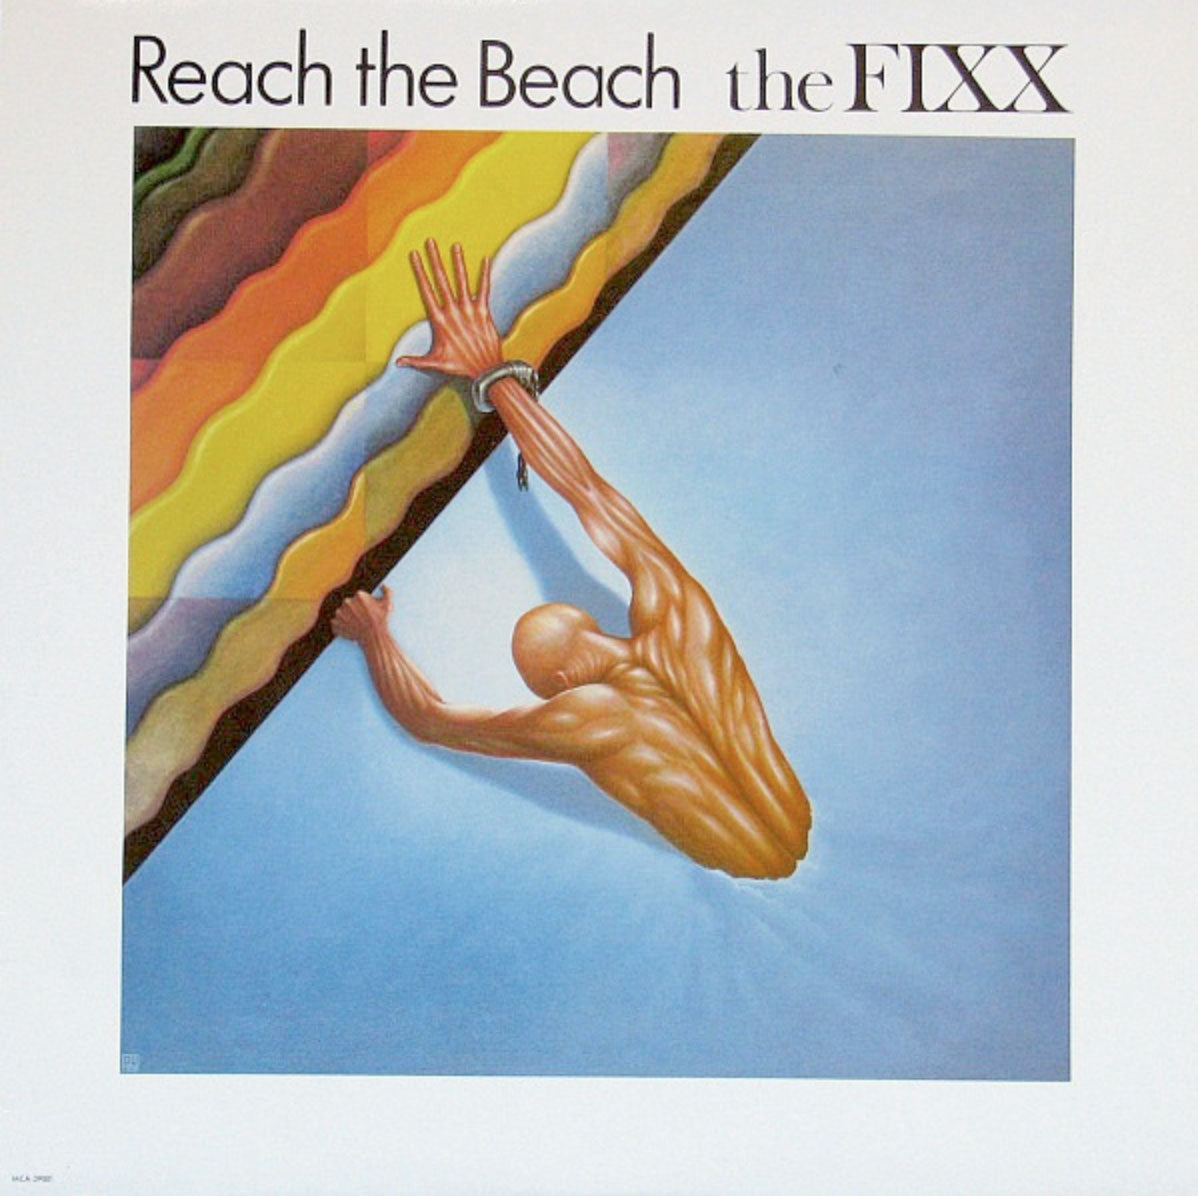 The Fixx – Reach The Beach - 1983